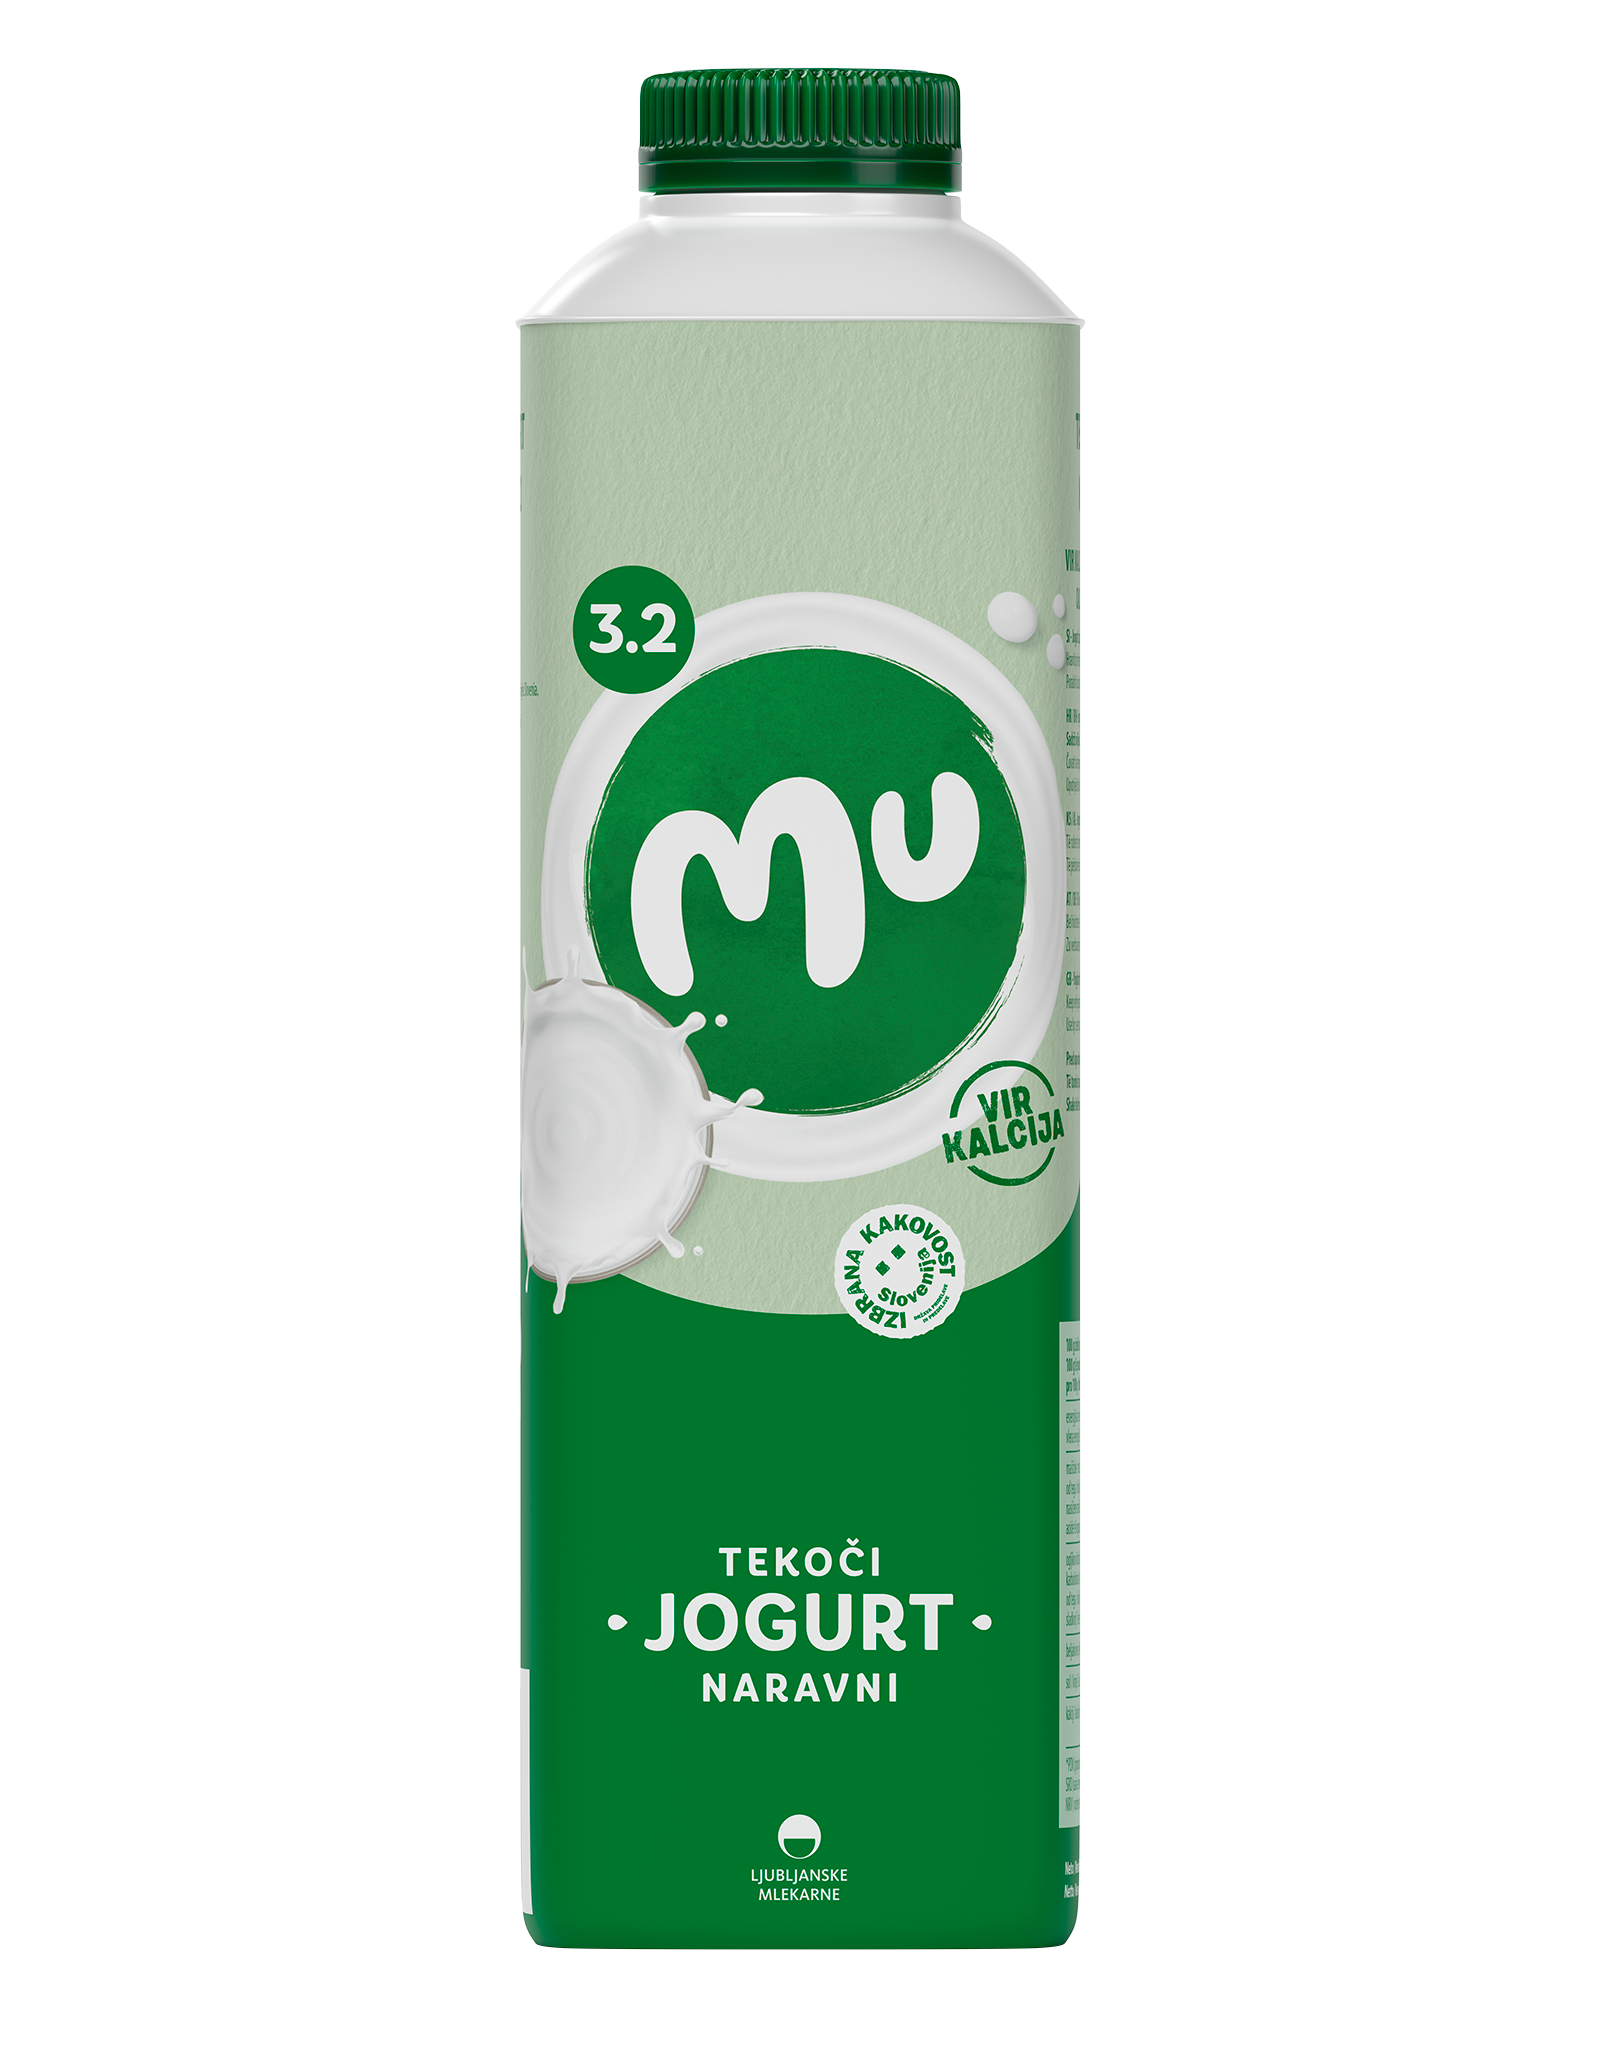 Mu naravni tekoči jogurt s 3,2 % m. m.; TT